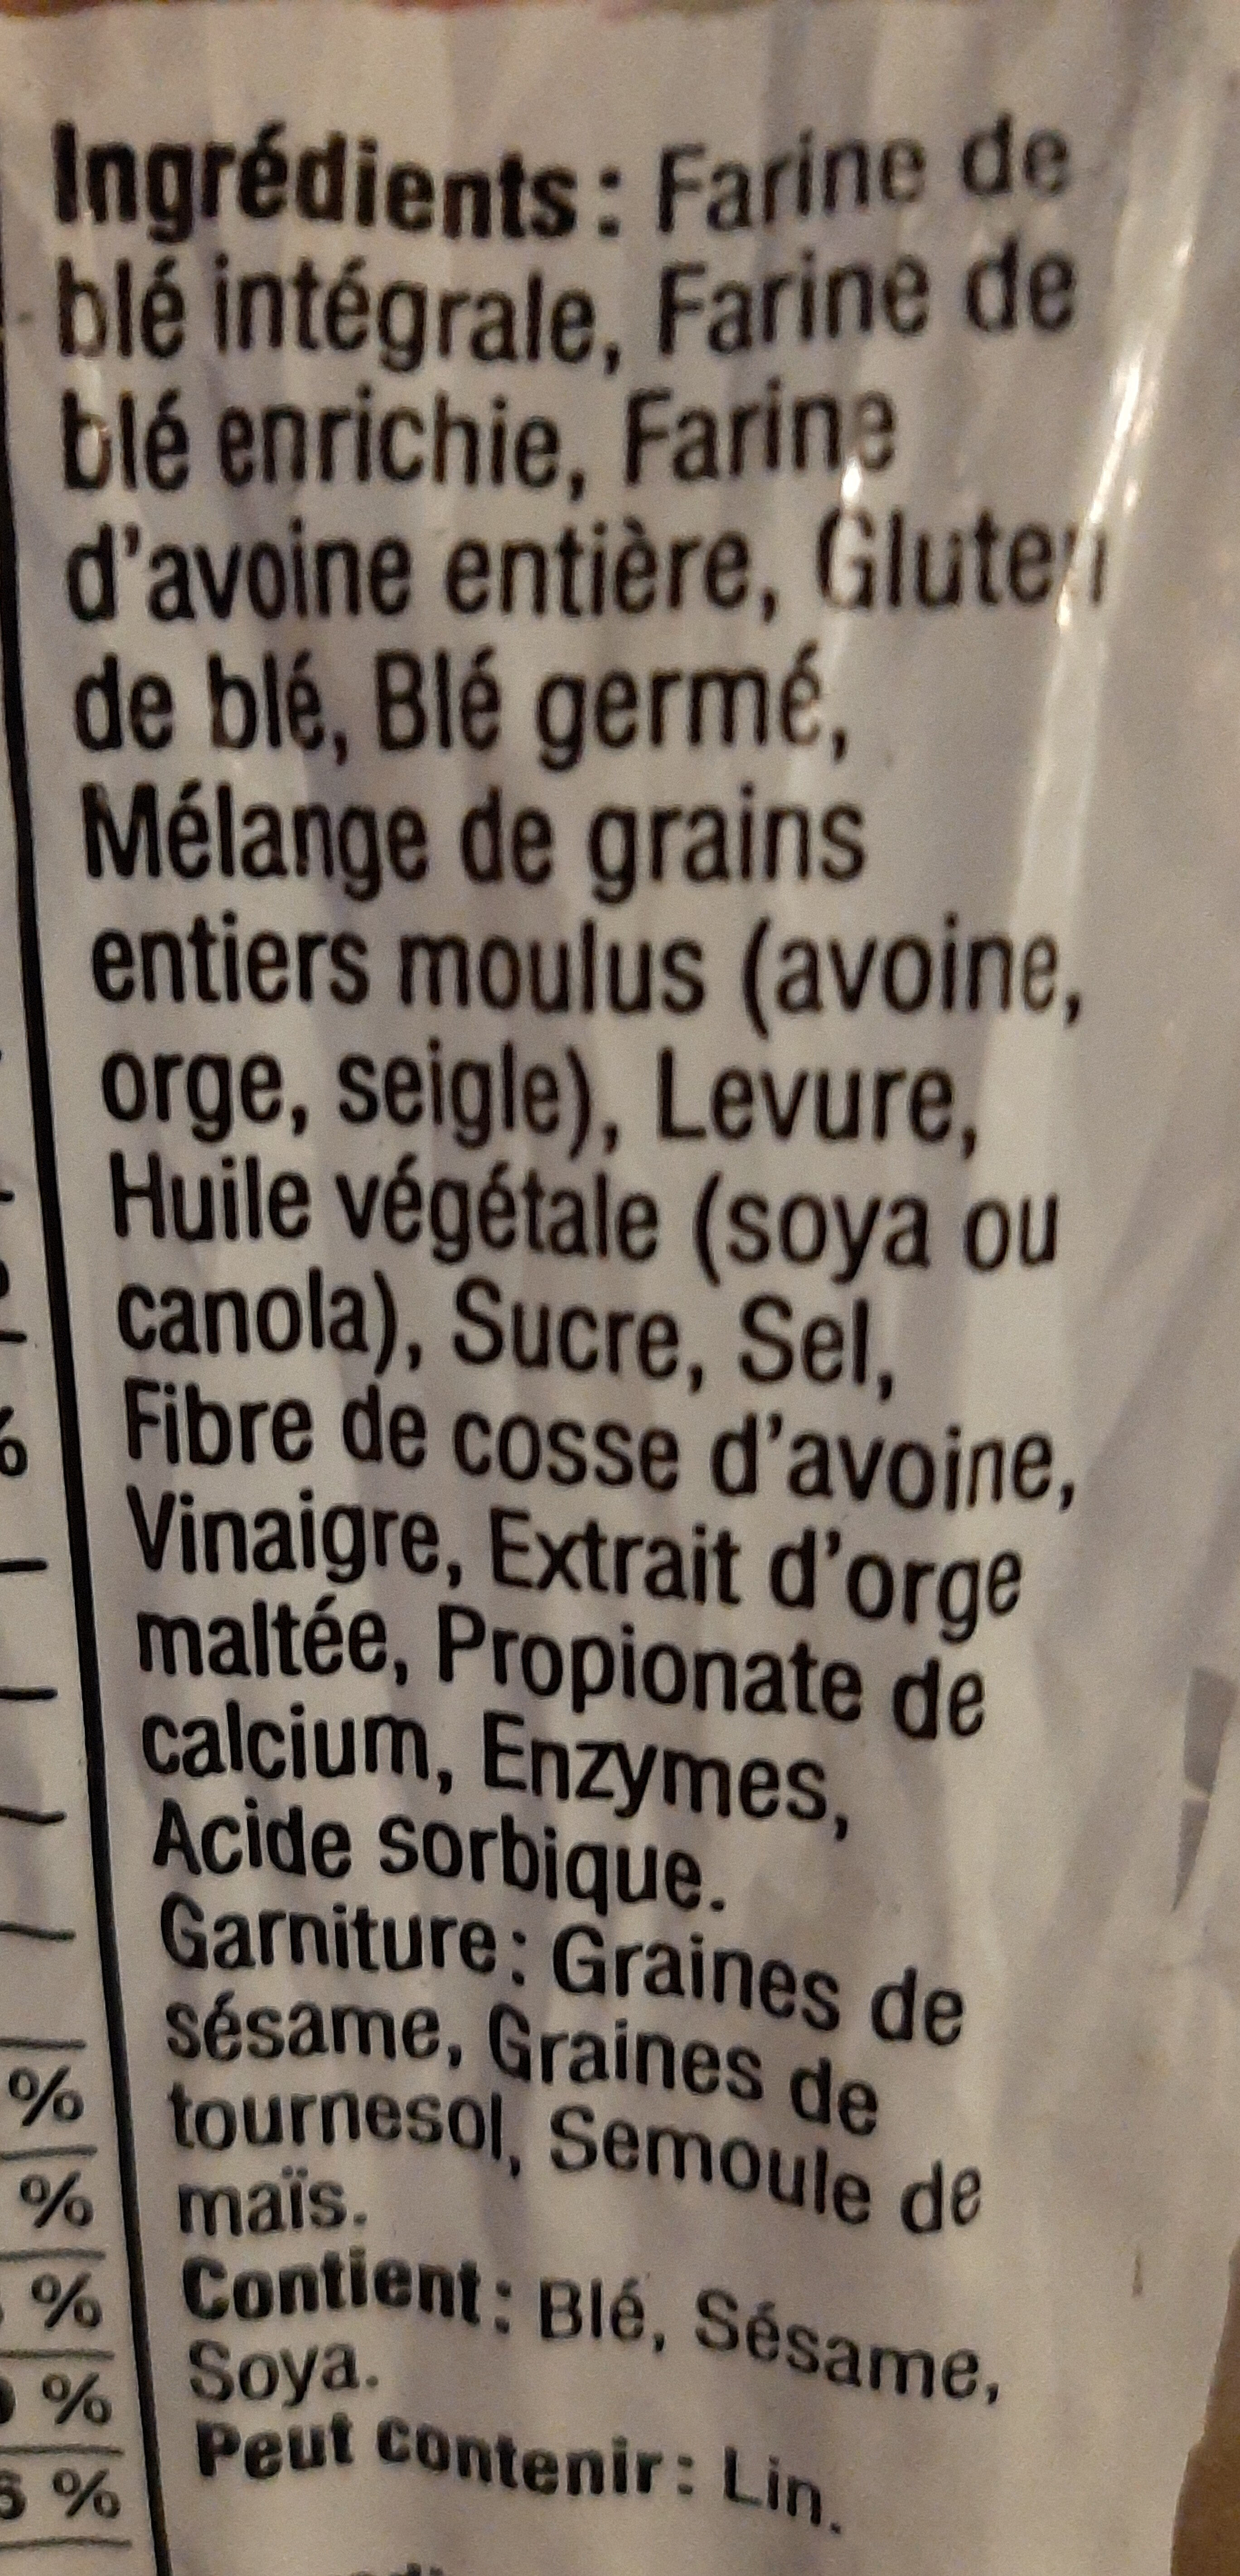 Pain Belge au Blé germé - Ingrédients